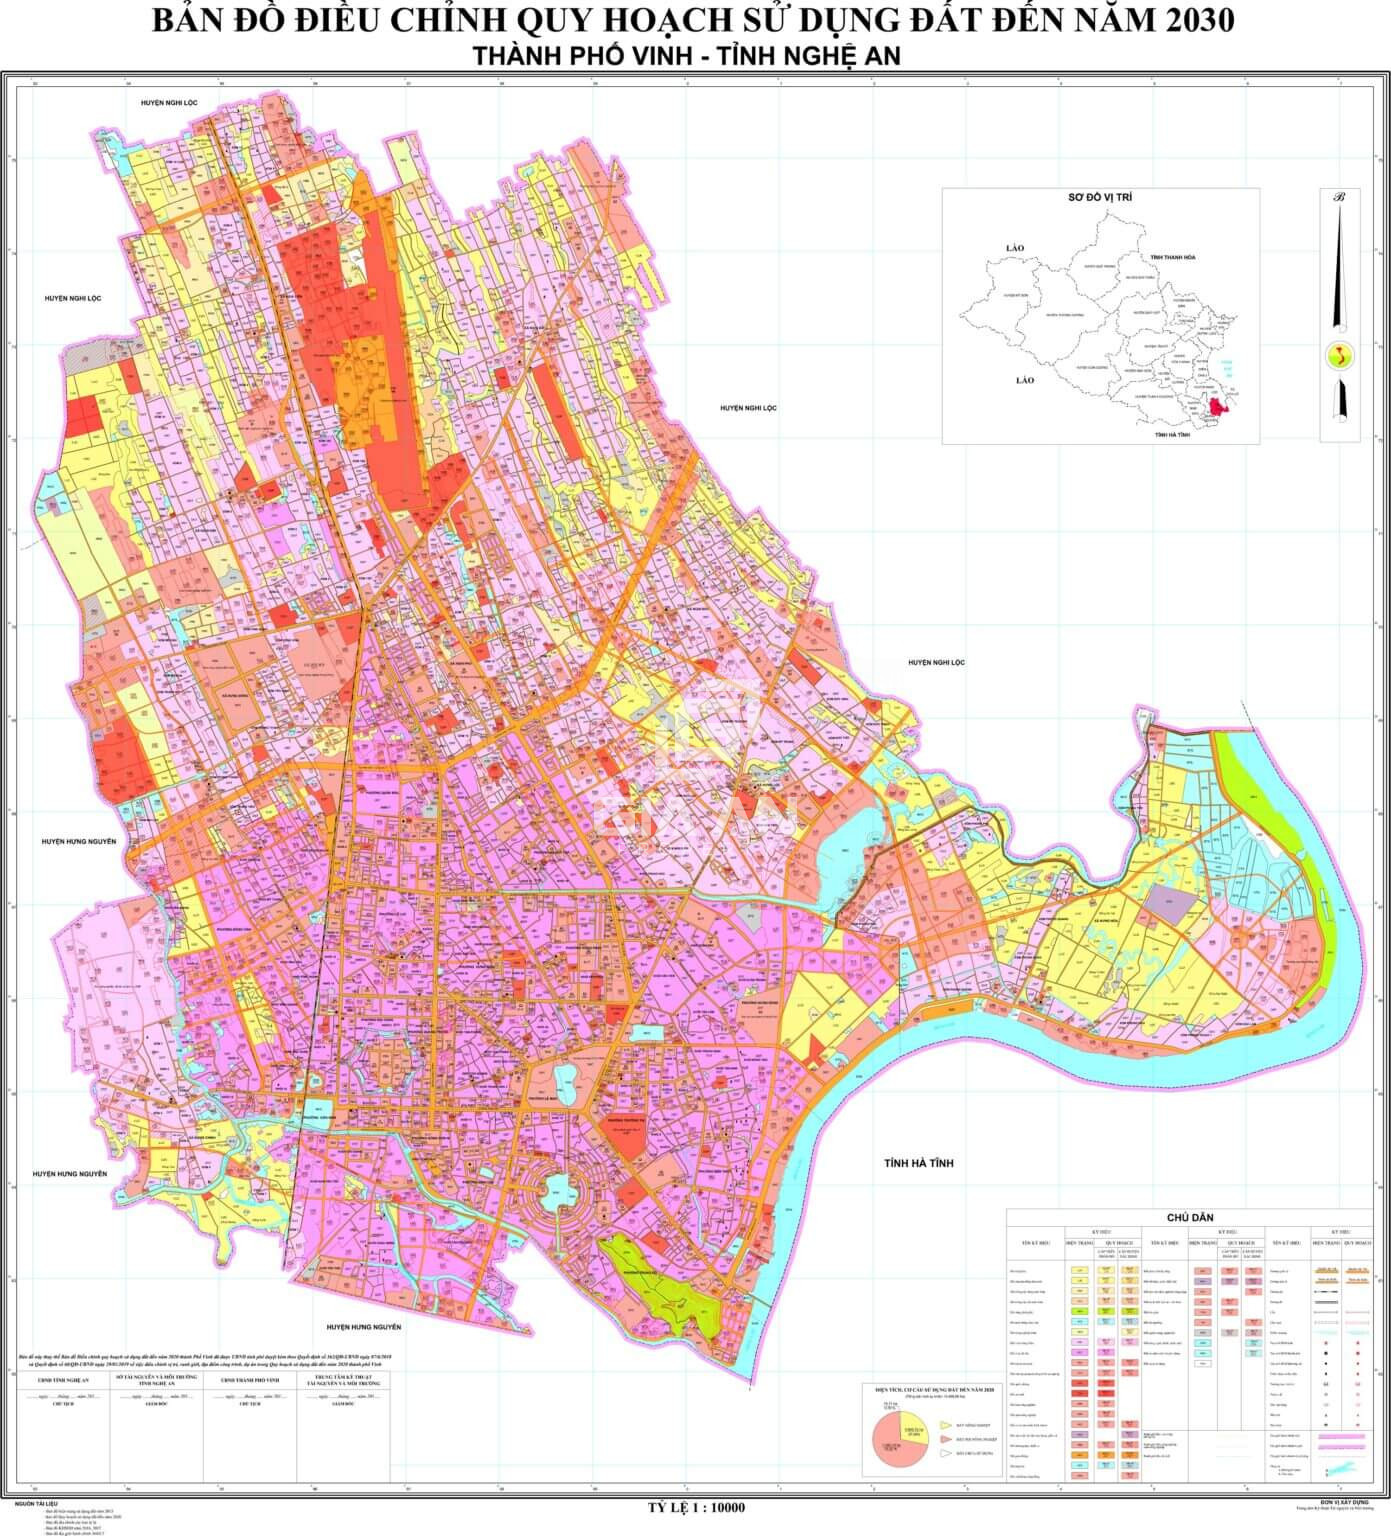 Bản đồ quy hoạch sử dụng đất thành phố Vinh đến năm 2030